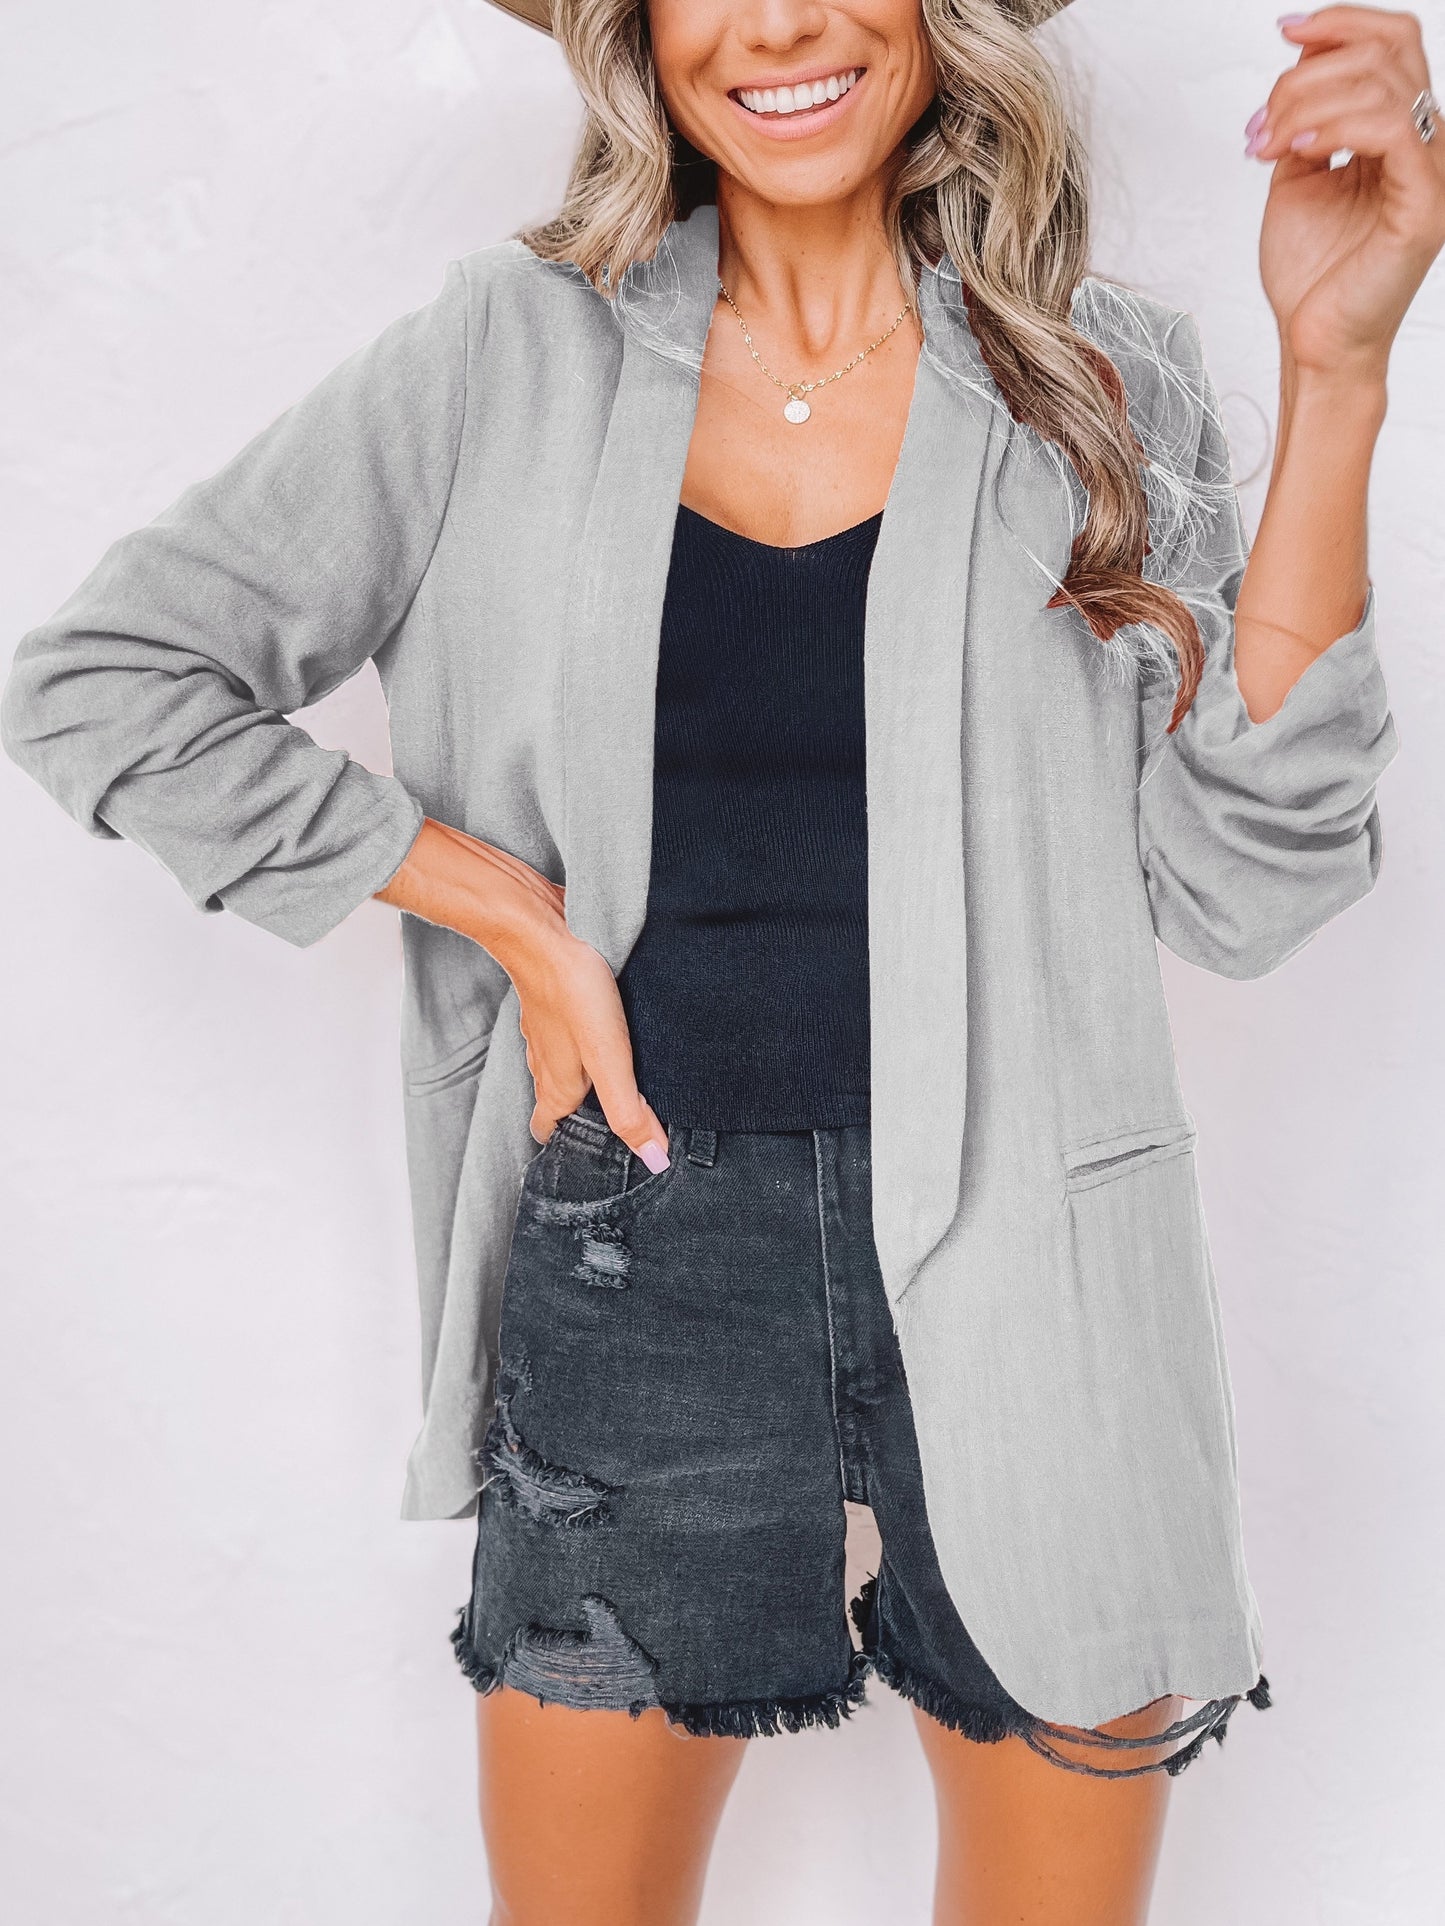 「binfenxie」Solid Lapel Blazer Jacket, Casual Long Sleeve Office Work Outerwear, Women's Clothing